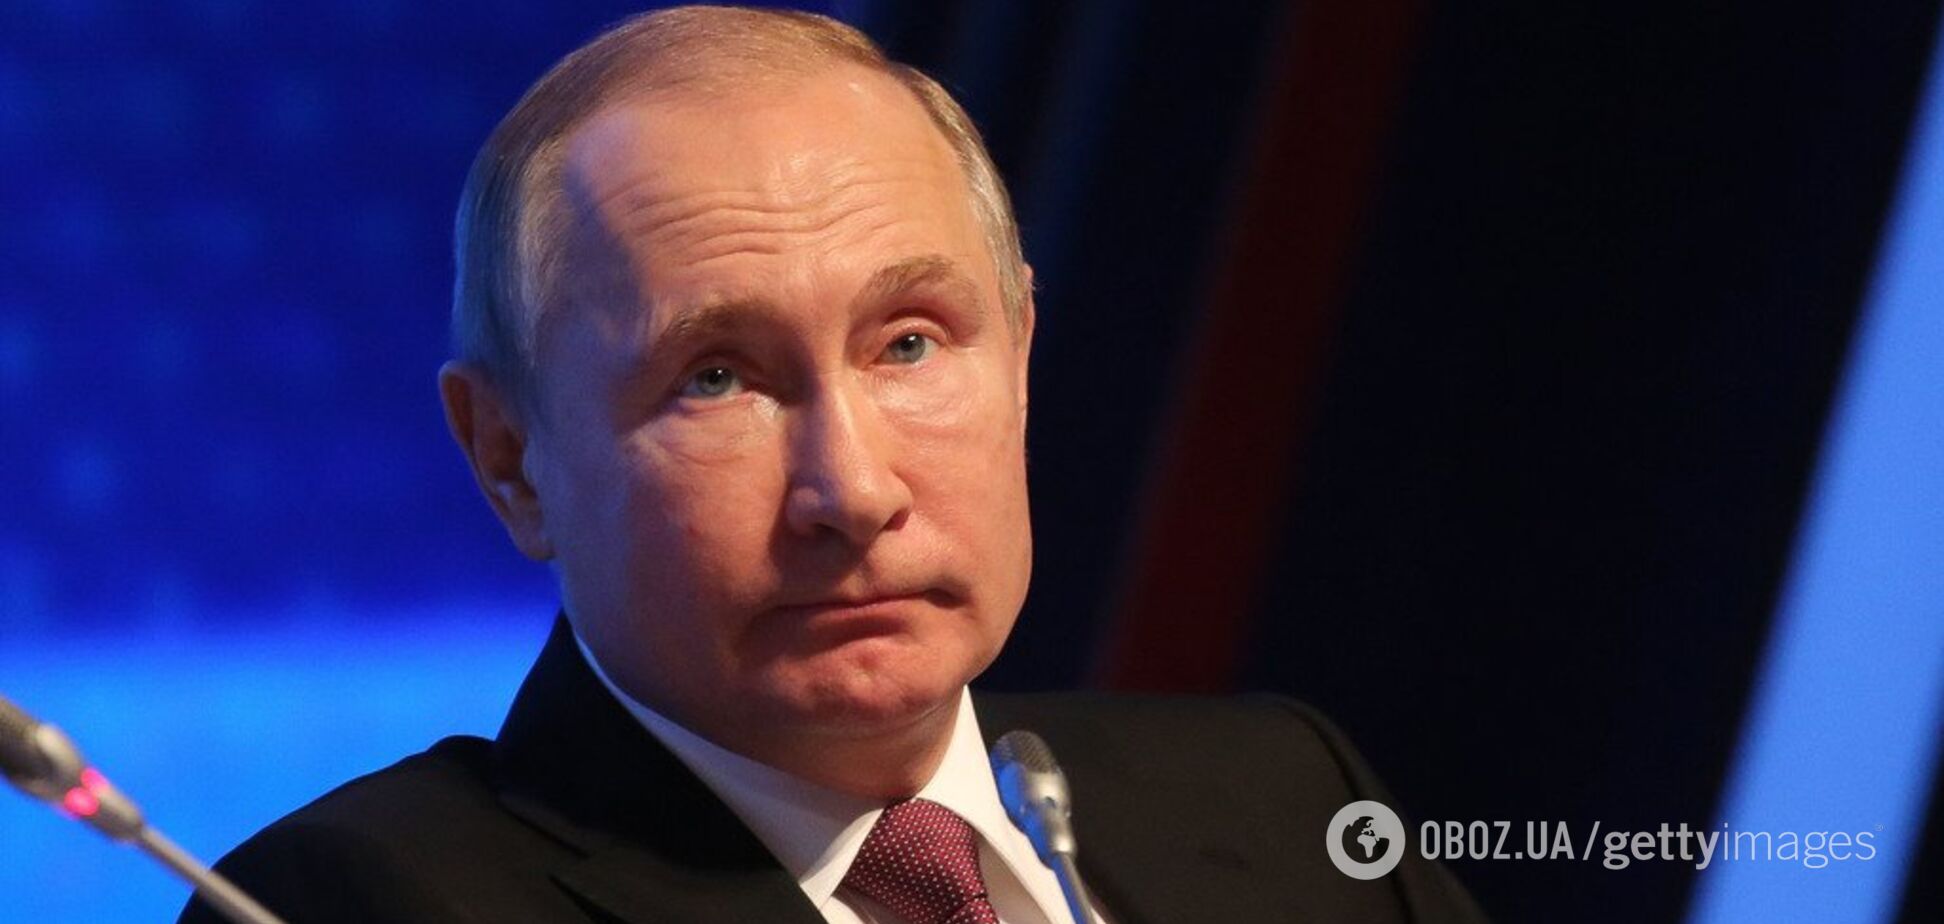 'Главарь бандитов на тумбочке в лабутенах': в сети высмеяли послание Путина